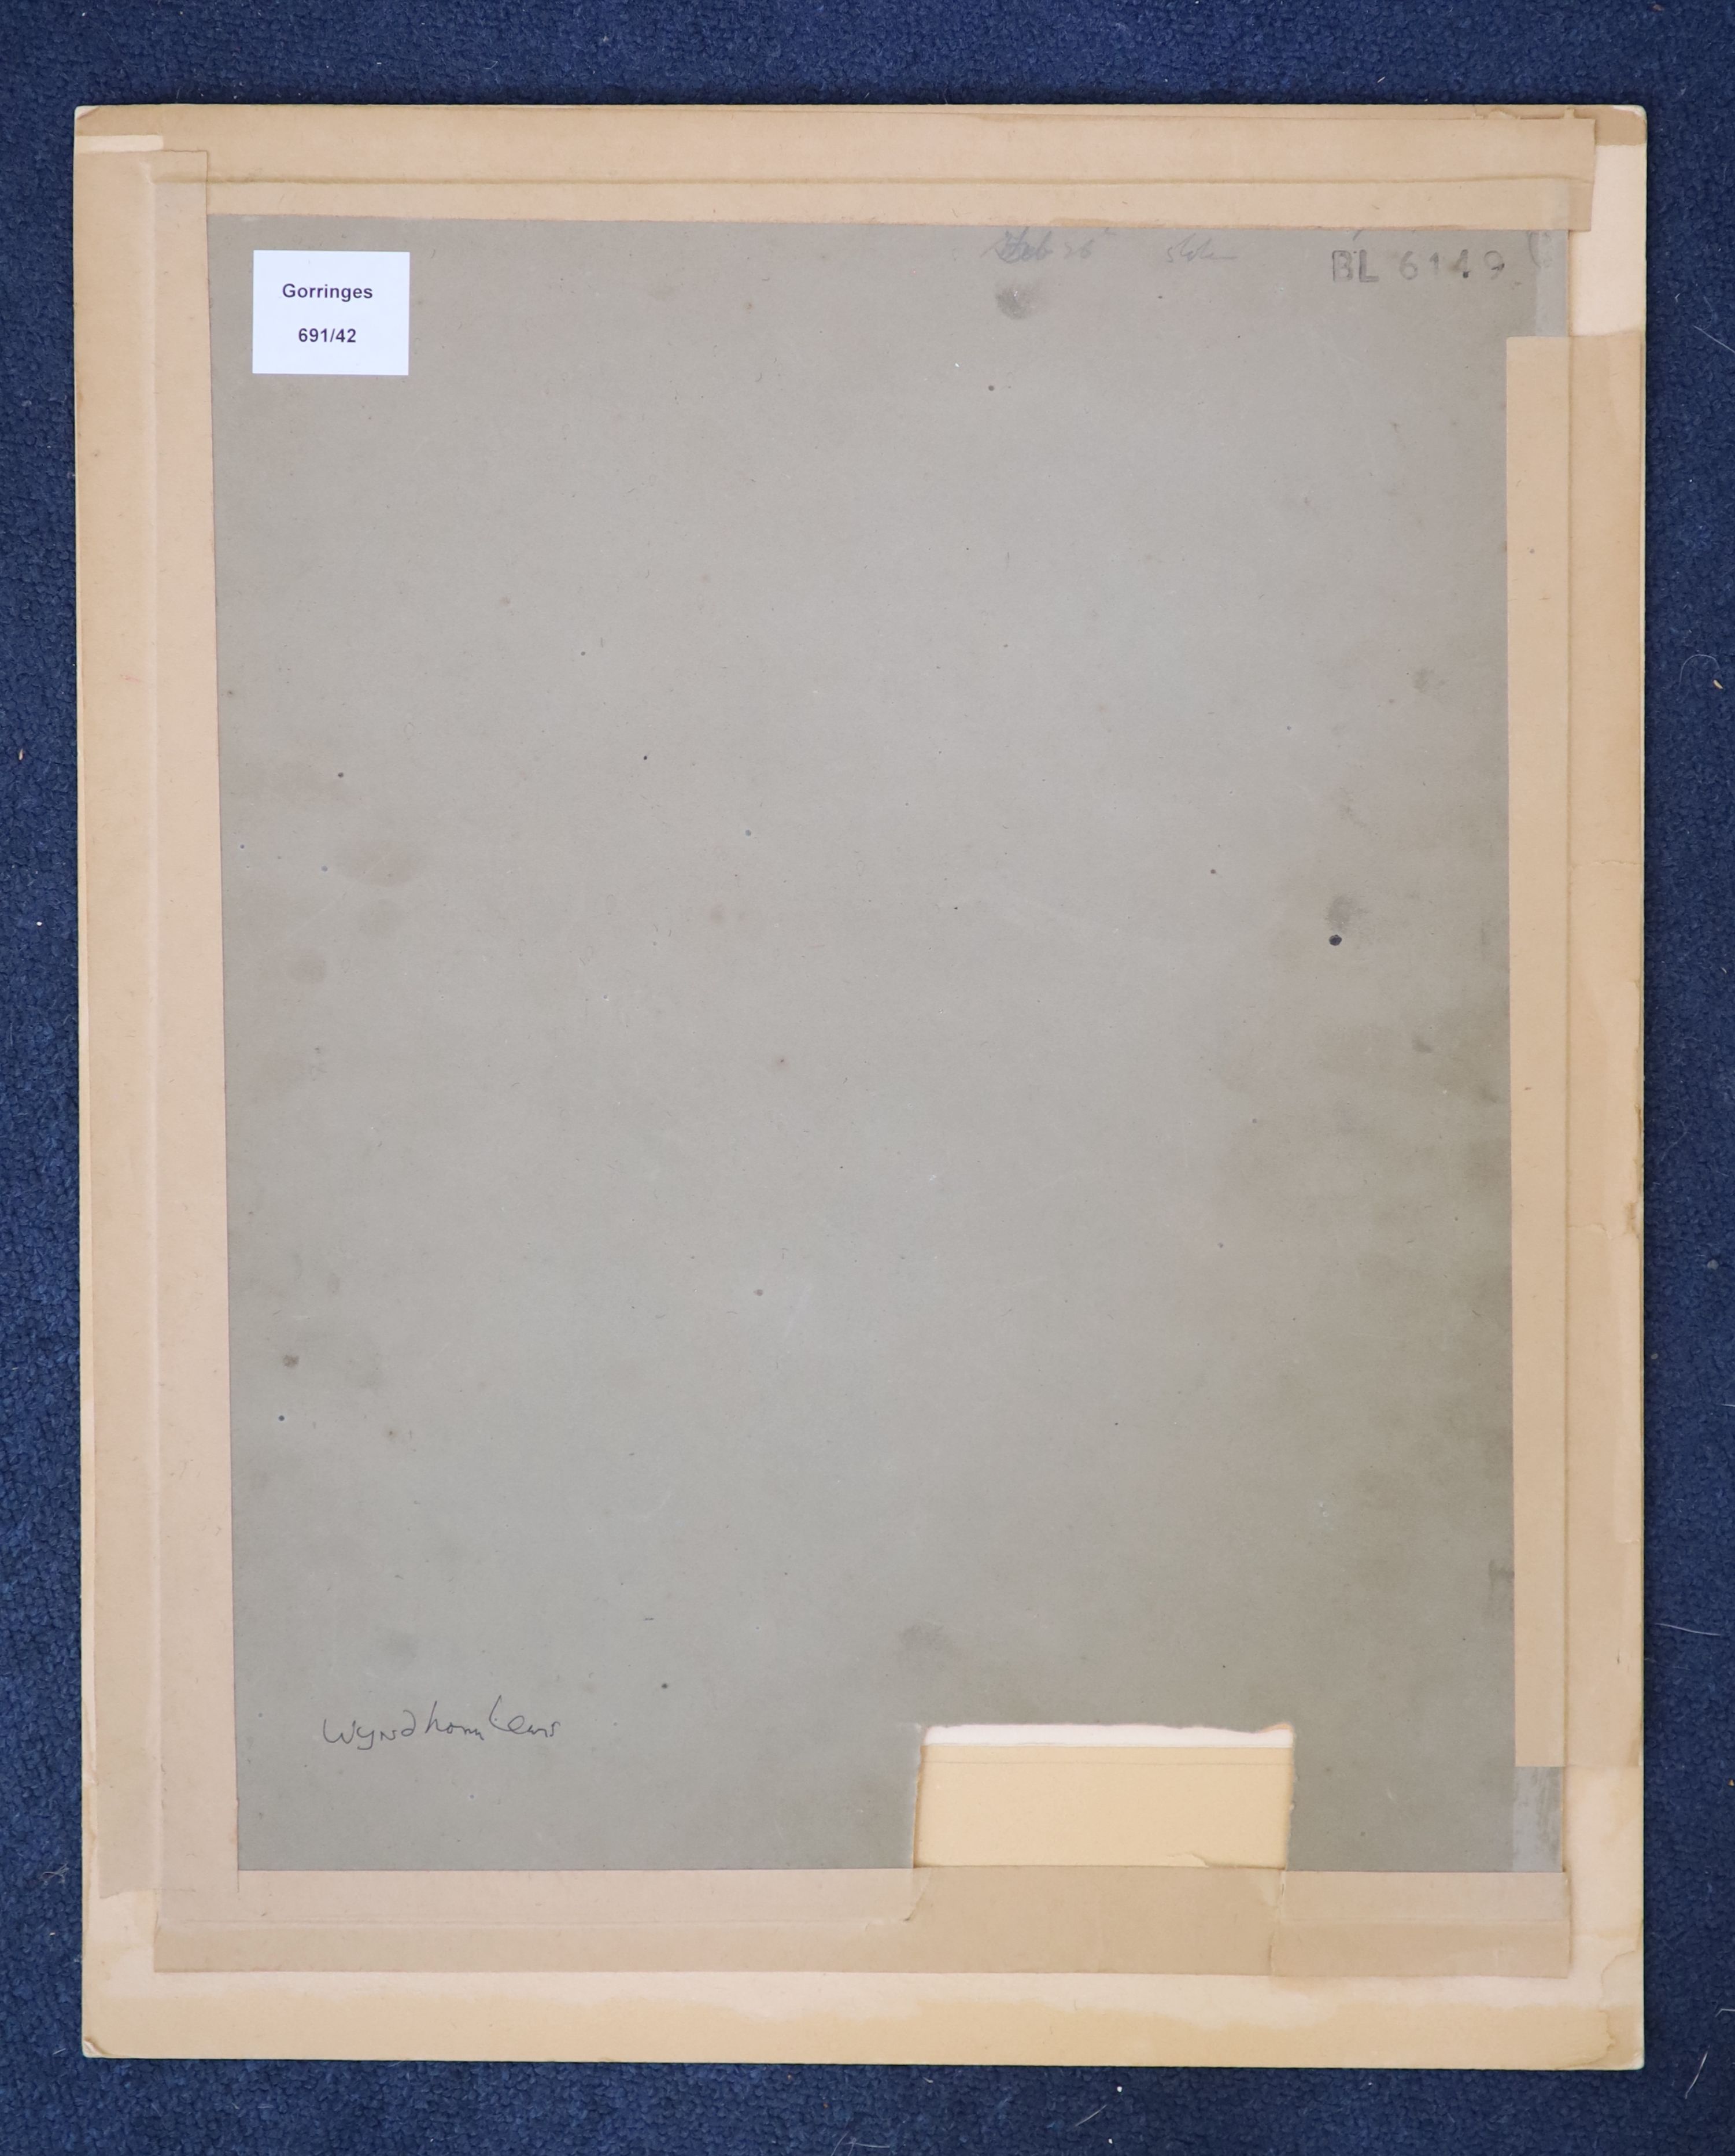 Rowland Emett (1906-1990), Artwork for Jonathan Cape, Ink and gouache on paper, 30.5 x 23cm. Unframed